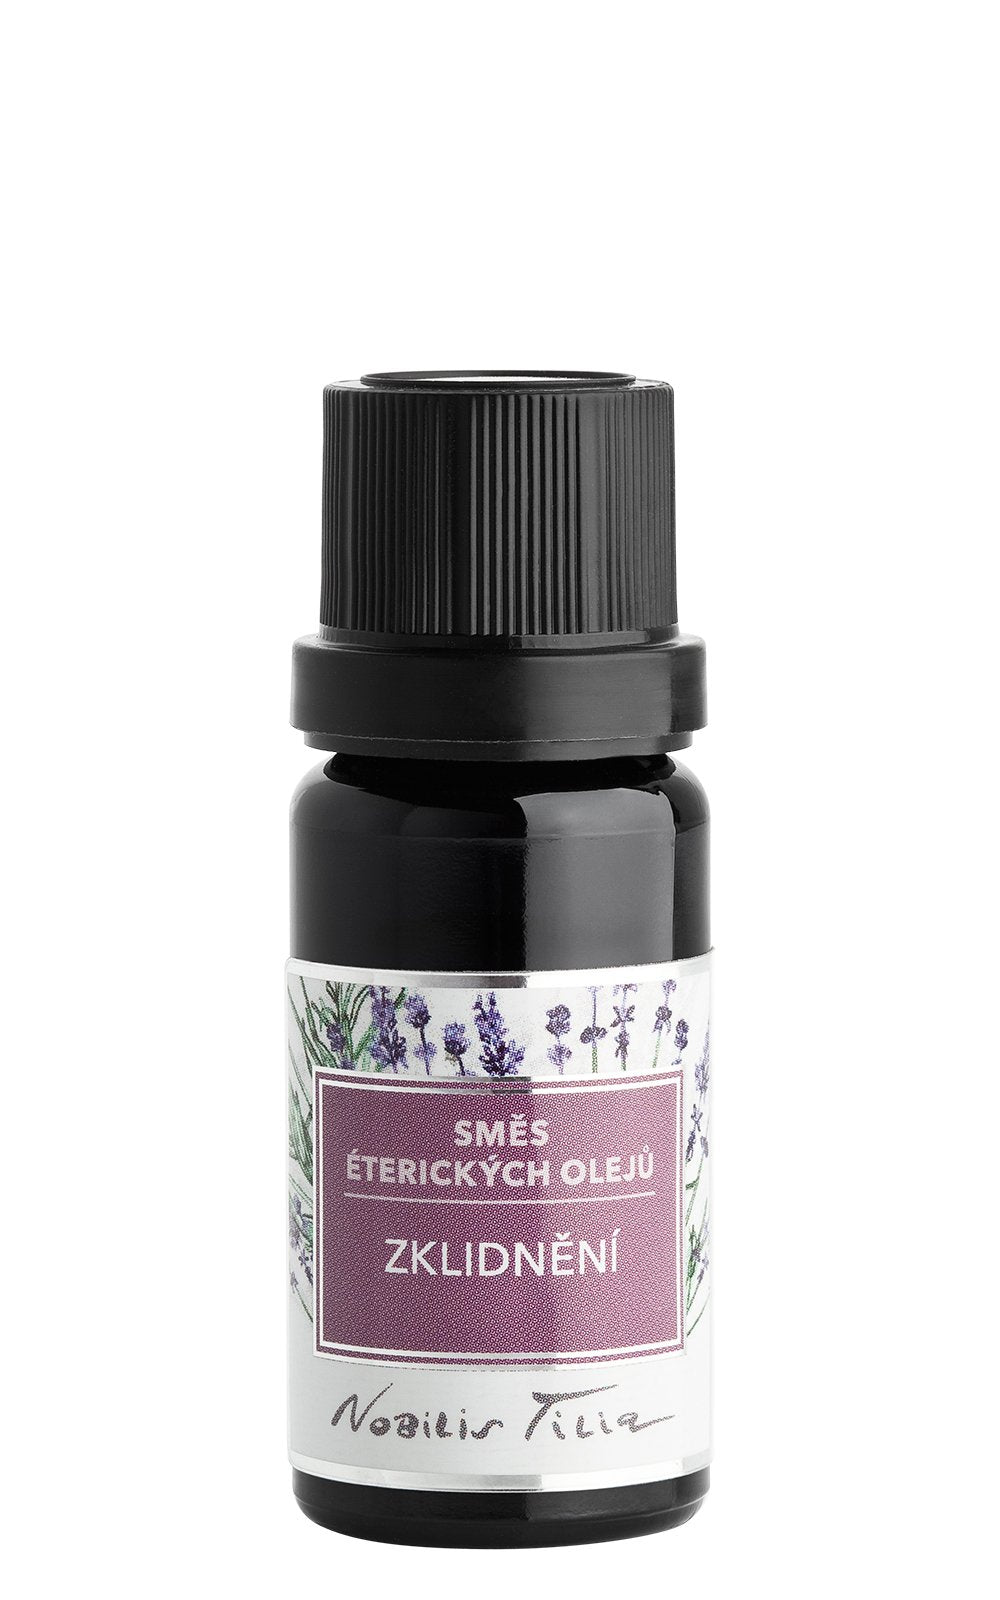 Nobilis Tilia Směs éterických olejů Zklidnění (10 ml) - pro relaxaci a klidný spánek Nobilis Tilia